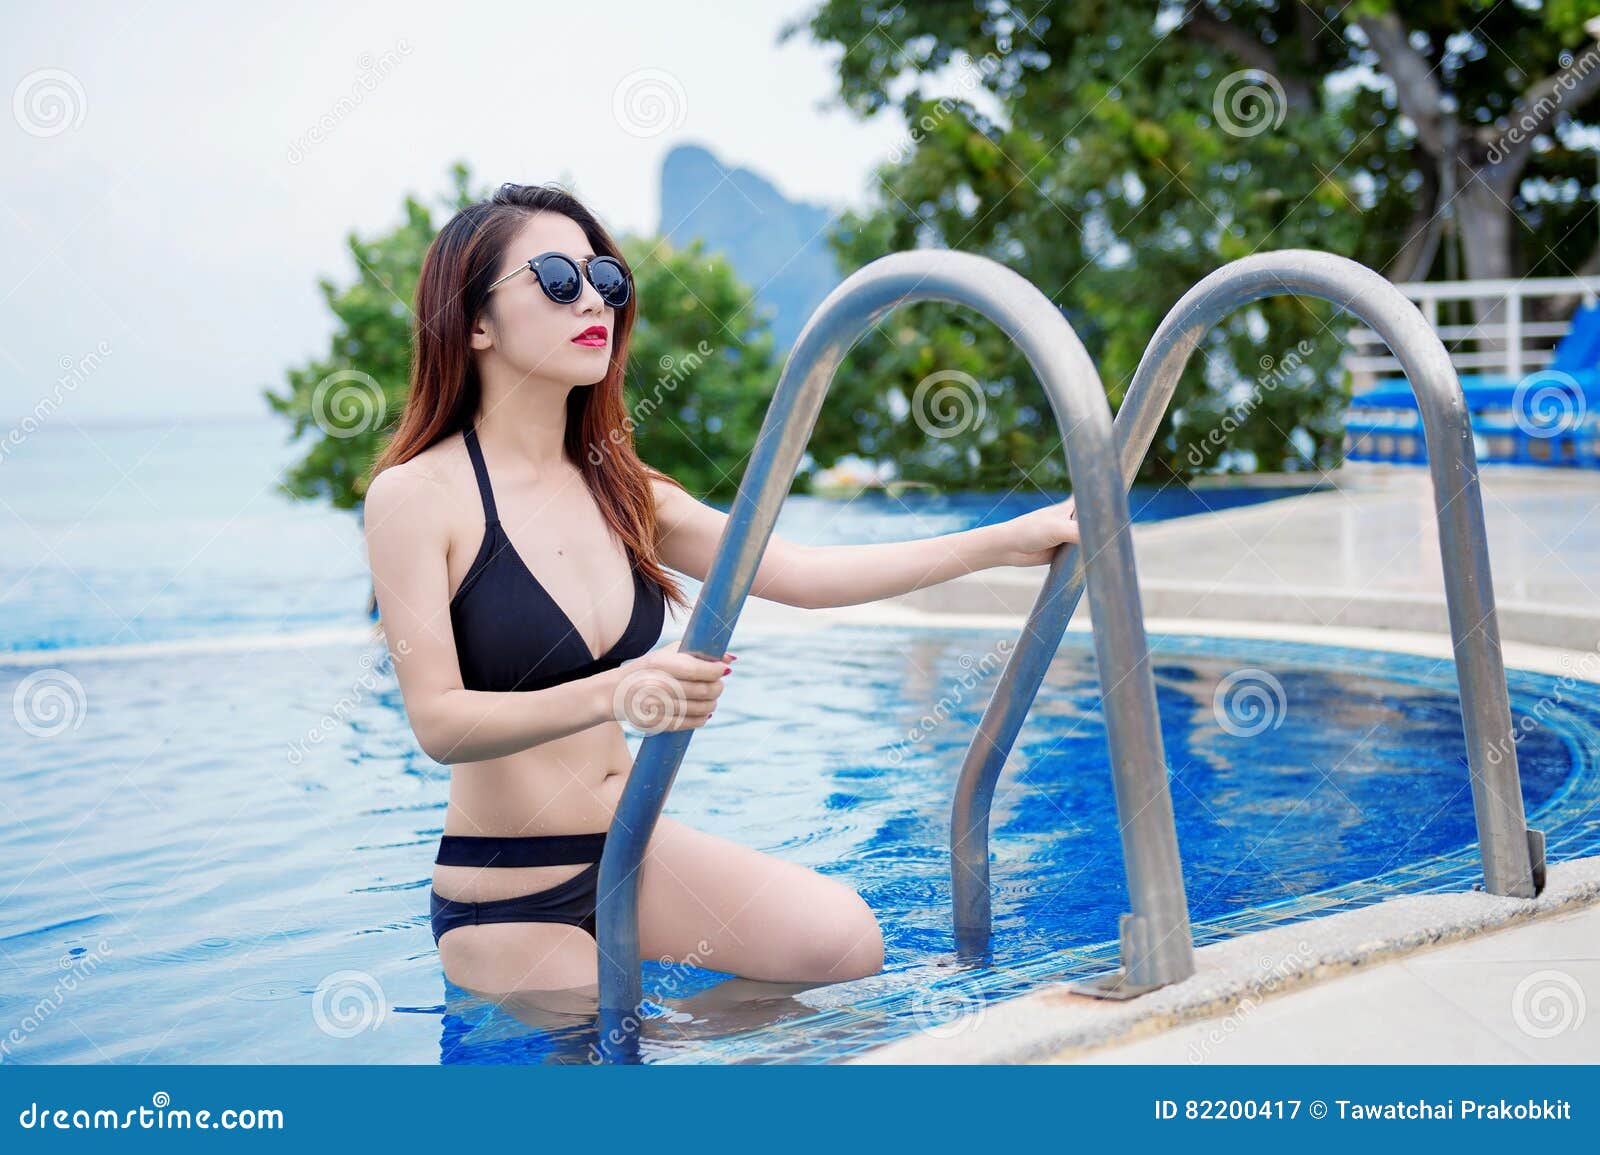 Wife bikini swimming pool